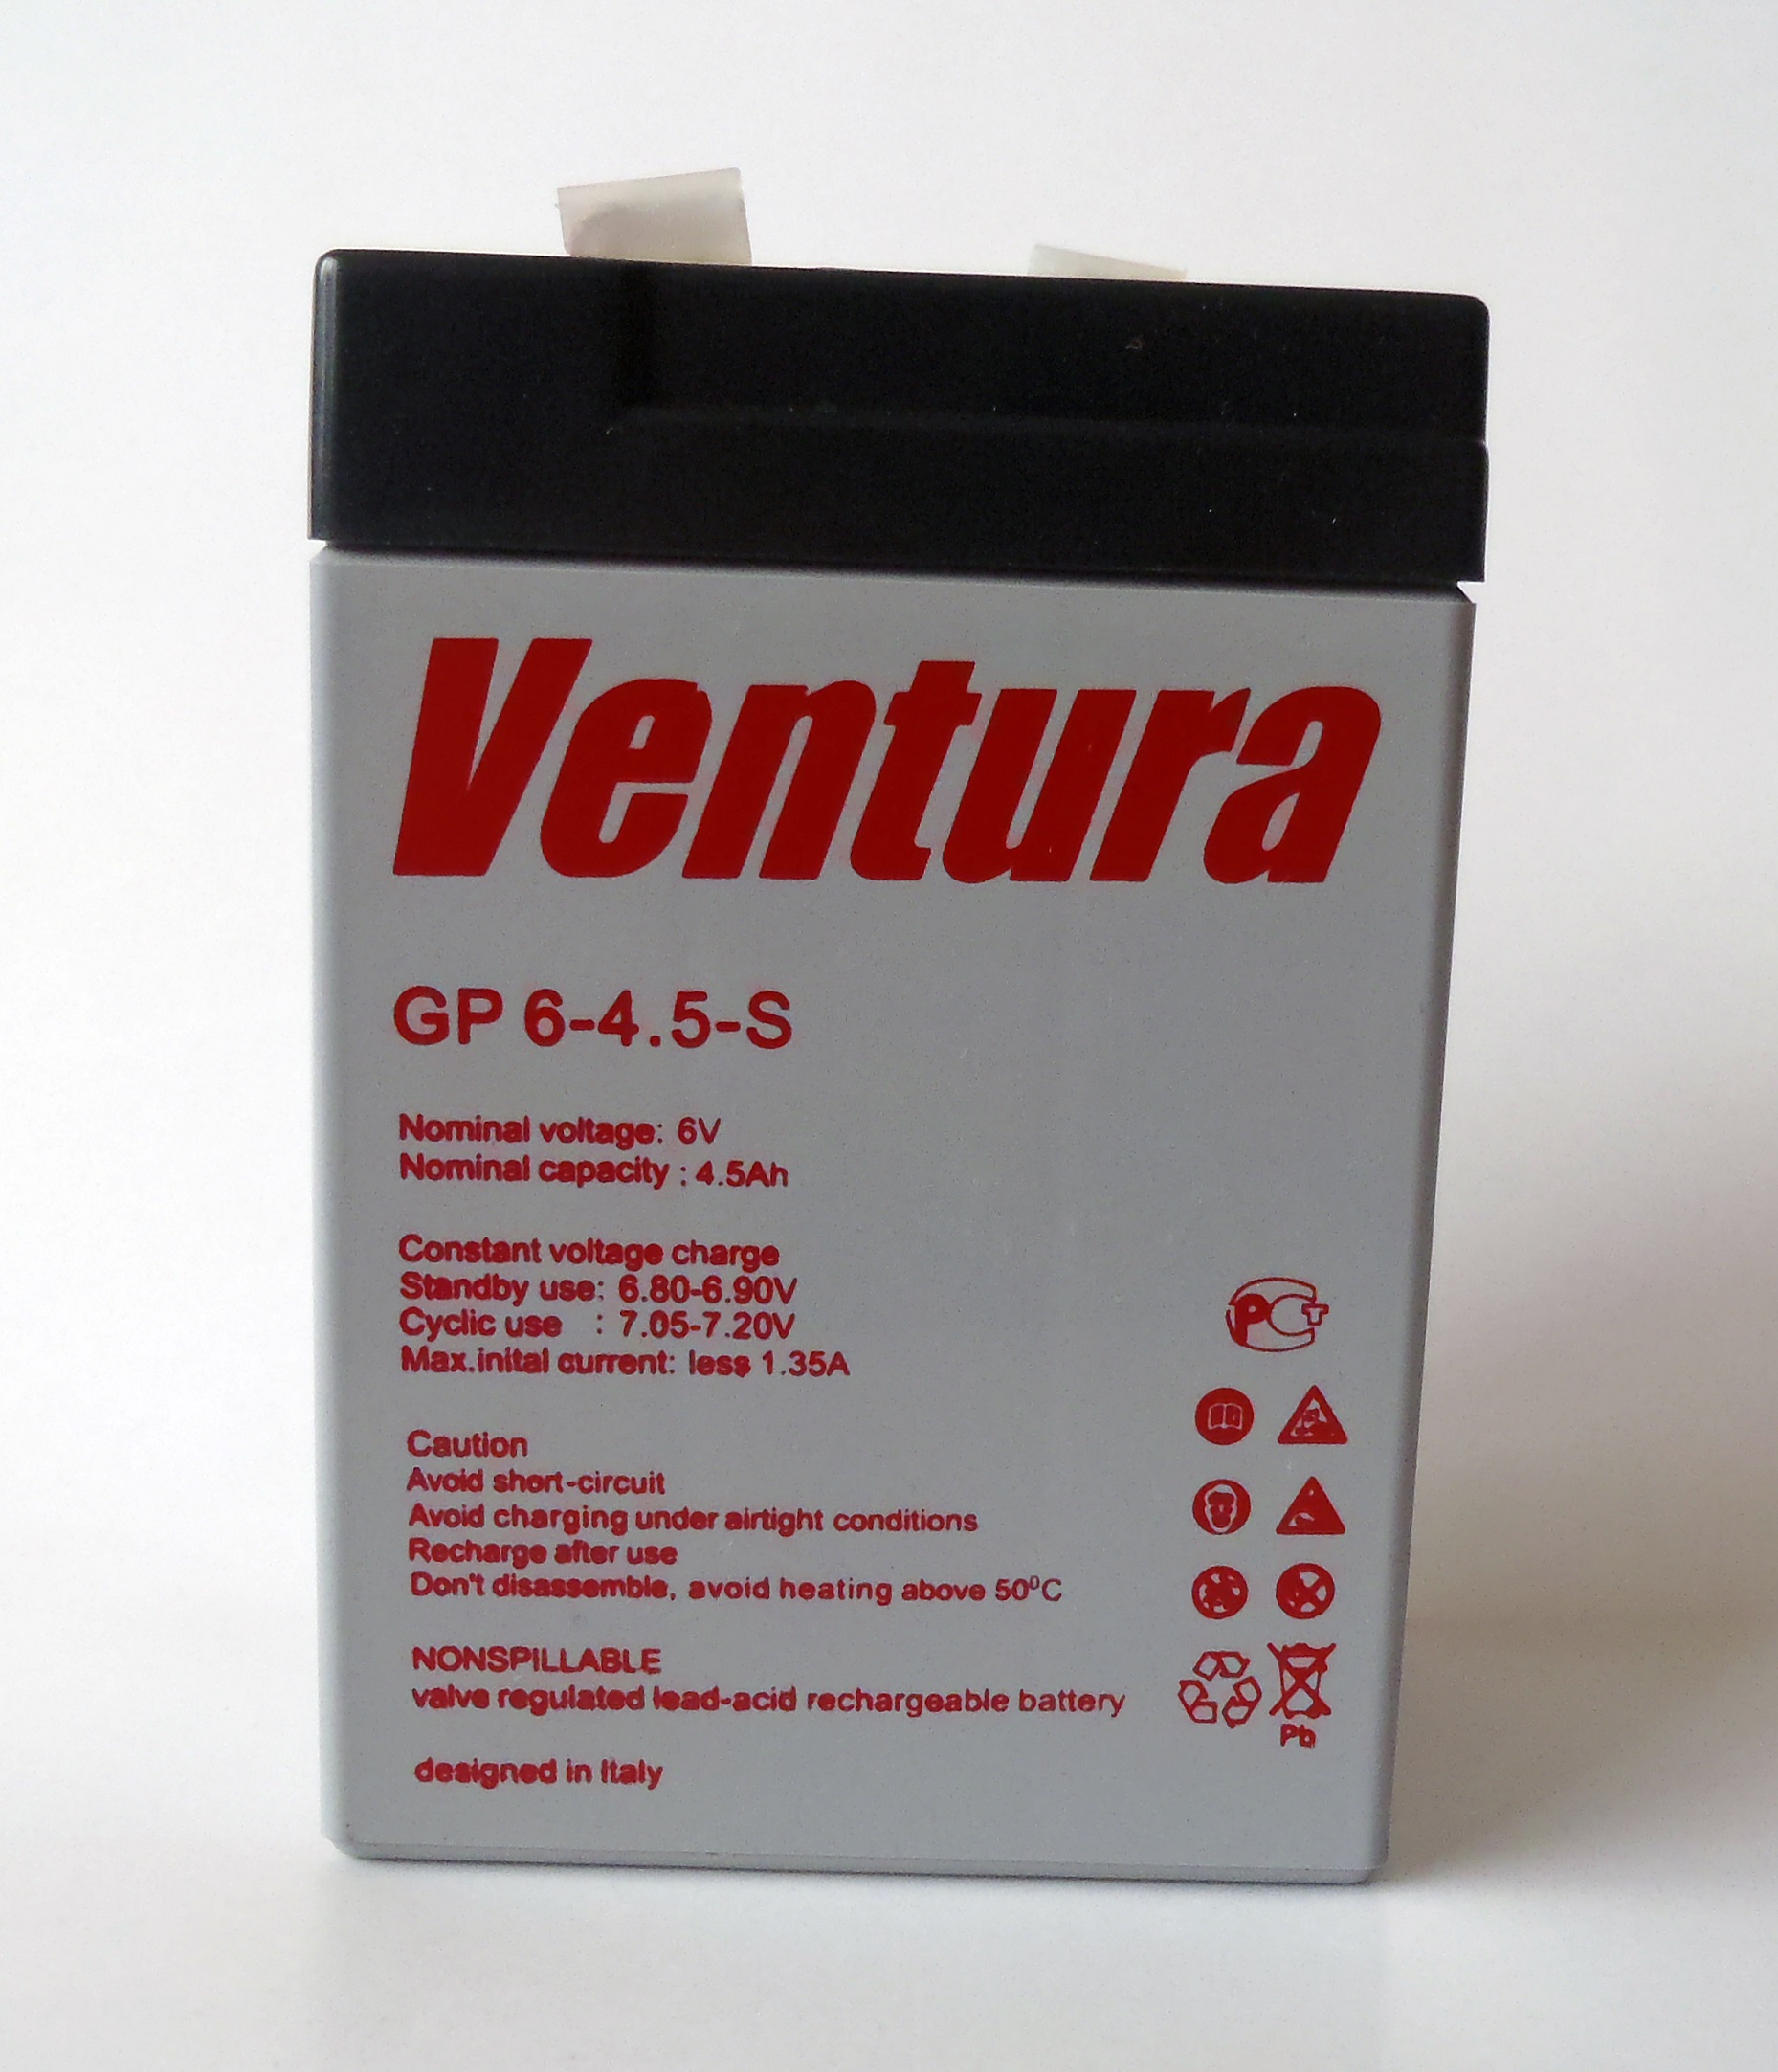 батарея VENTURA GP 6-4.5-S T1 (GP6-4.5-ST1) 4.5ah 6V - купить в Нижнем Новгороде